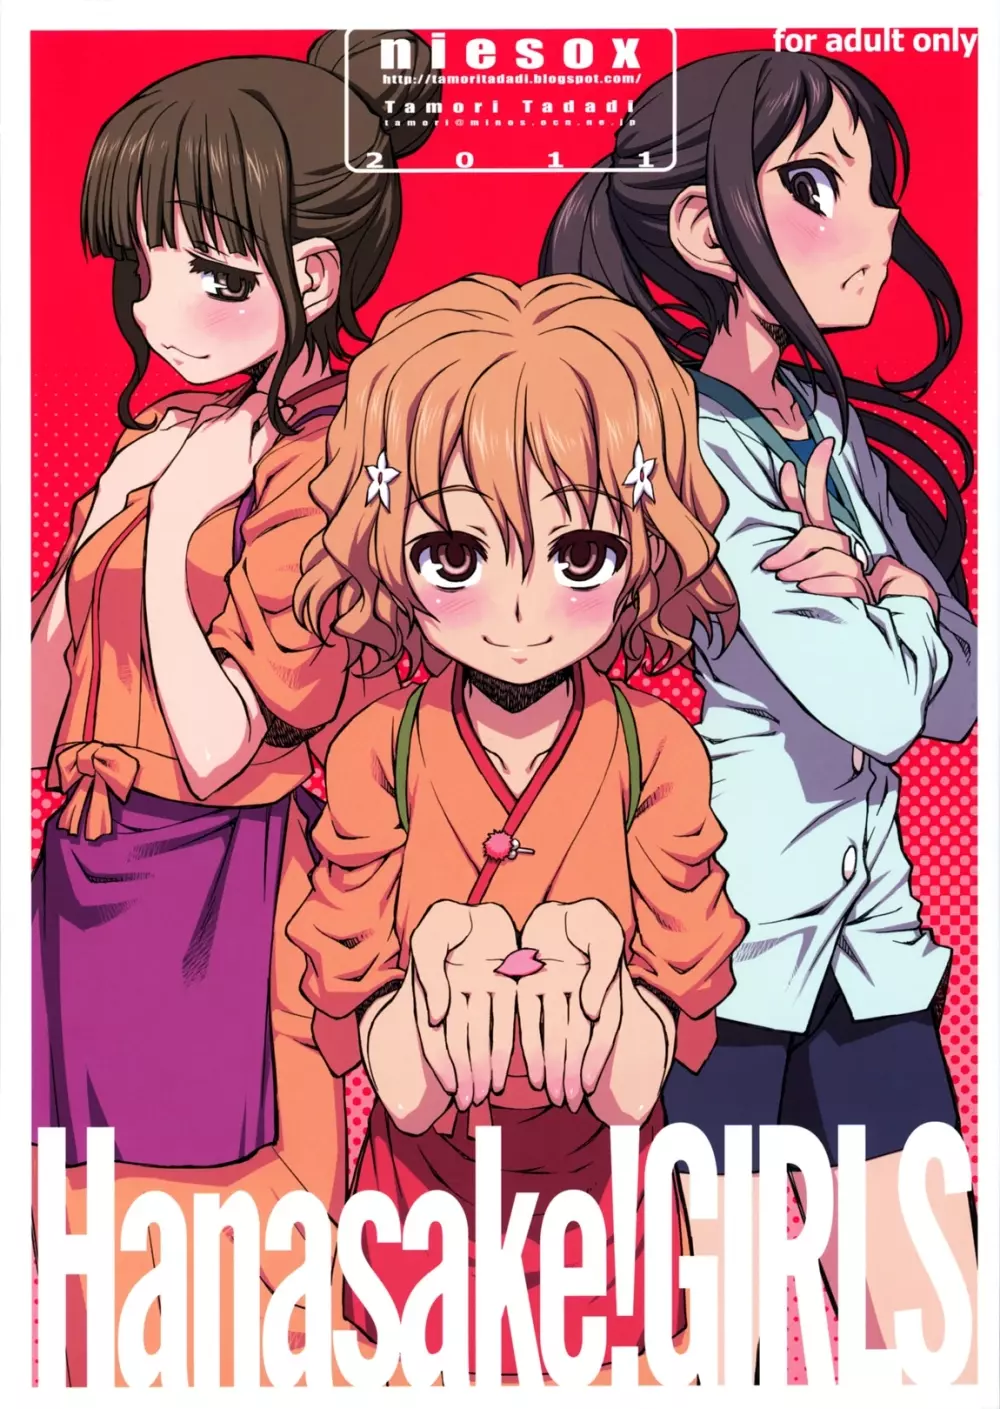 Hanasake!GIRLS - page1